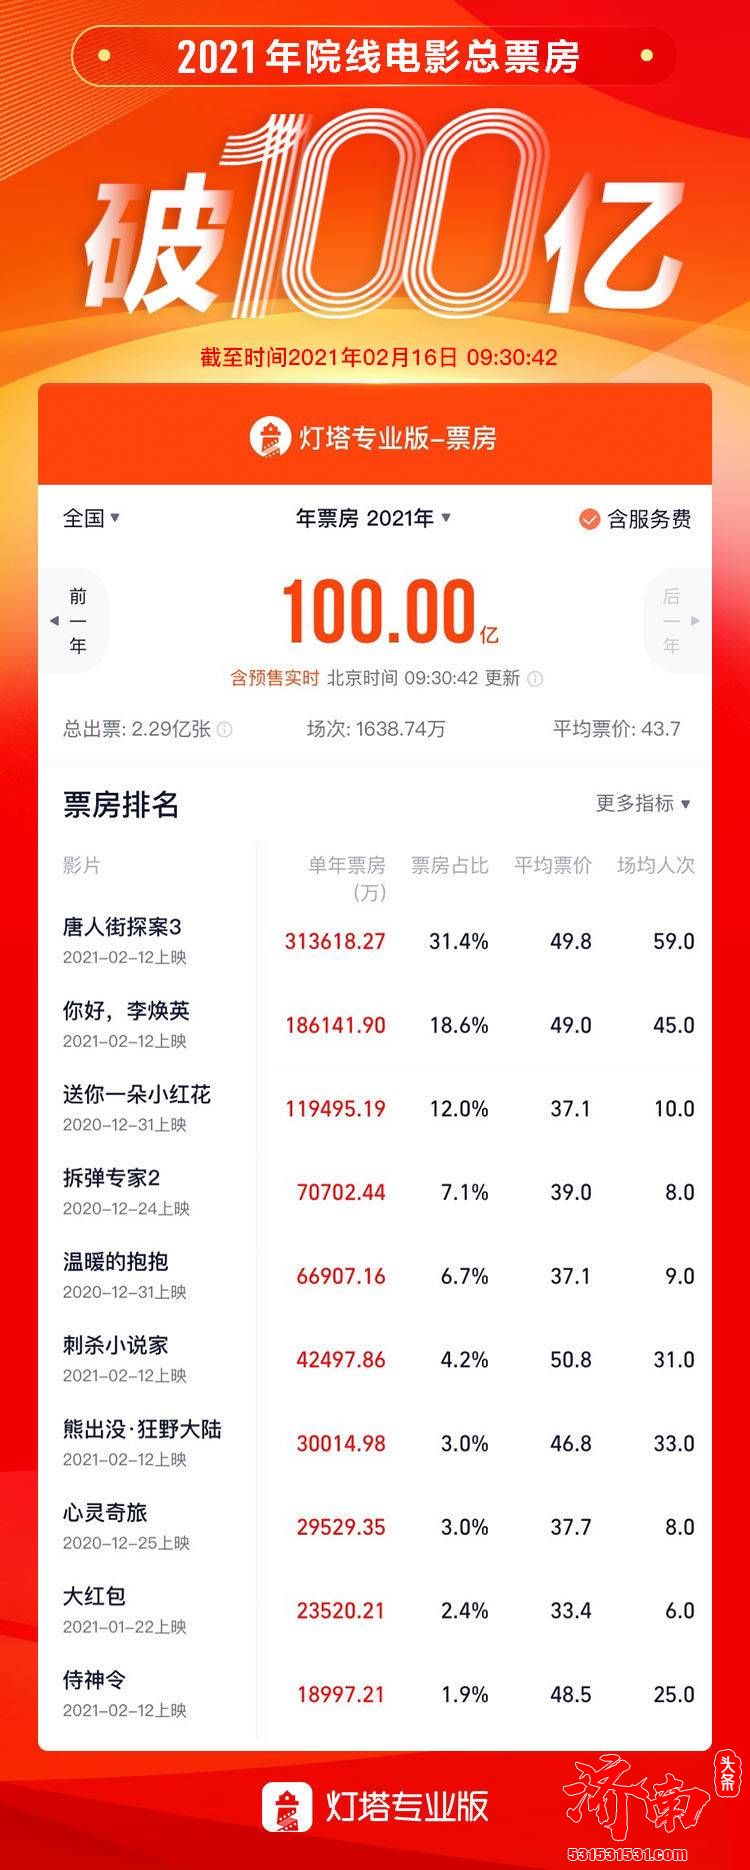 中国电影市场2021年度总票房(含预售)突破100亿元